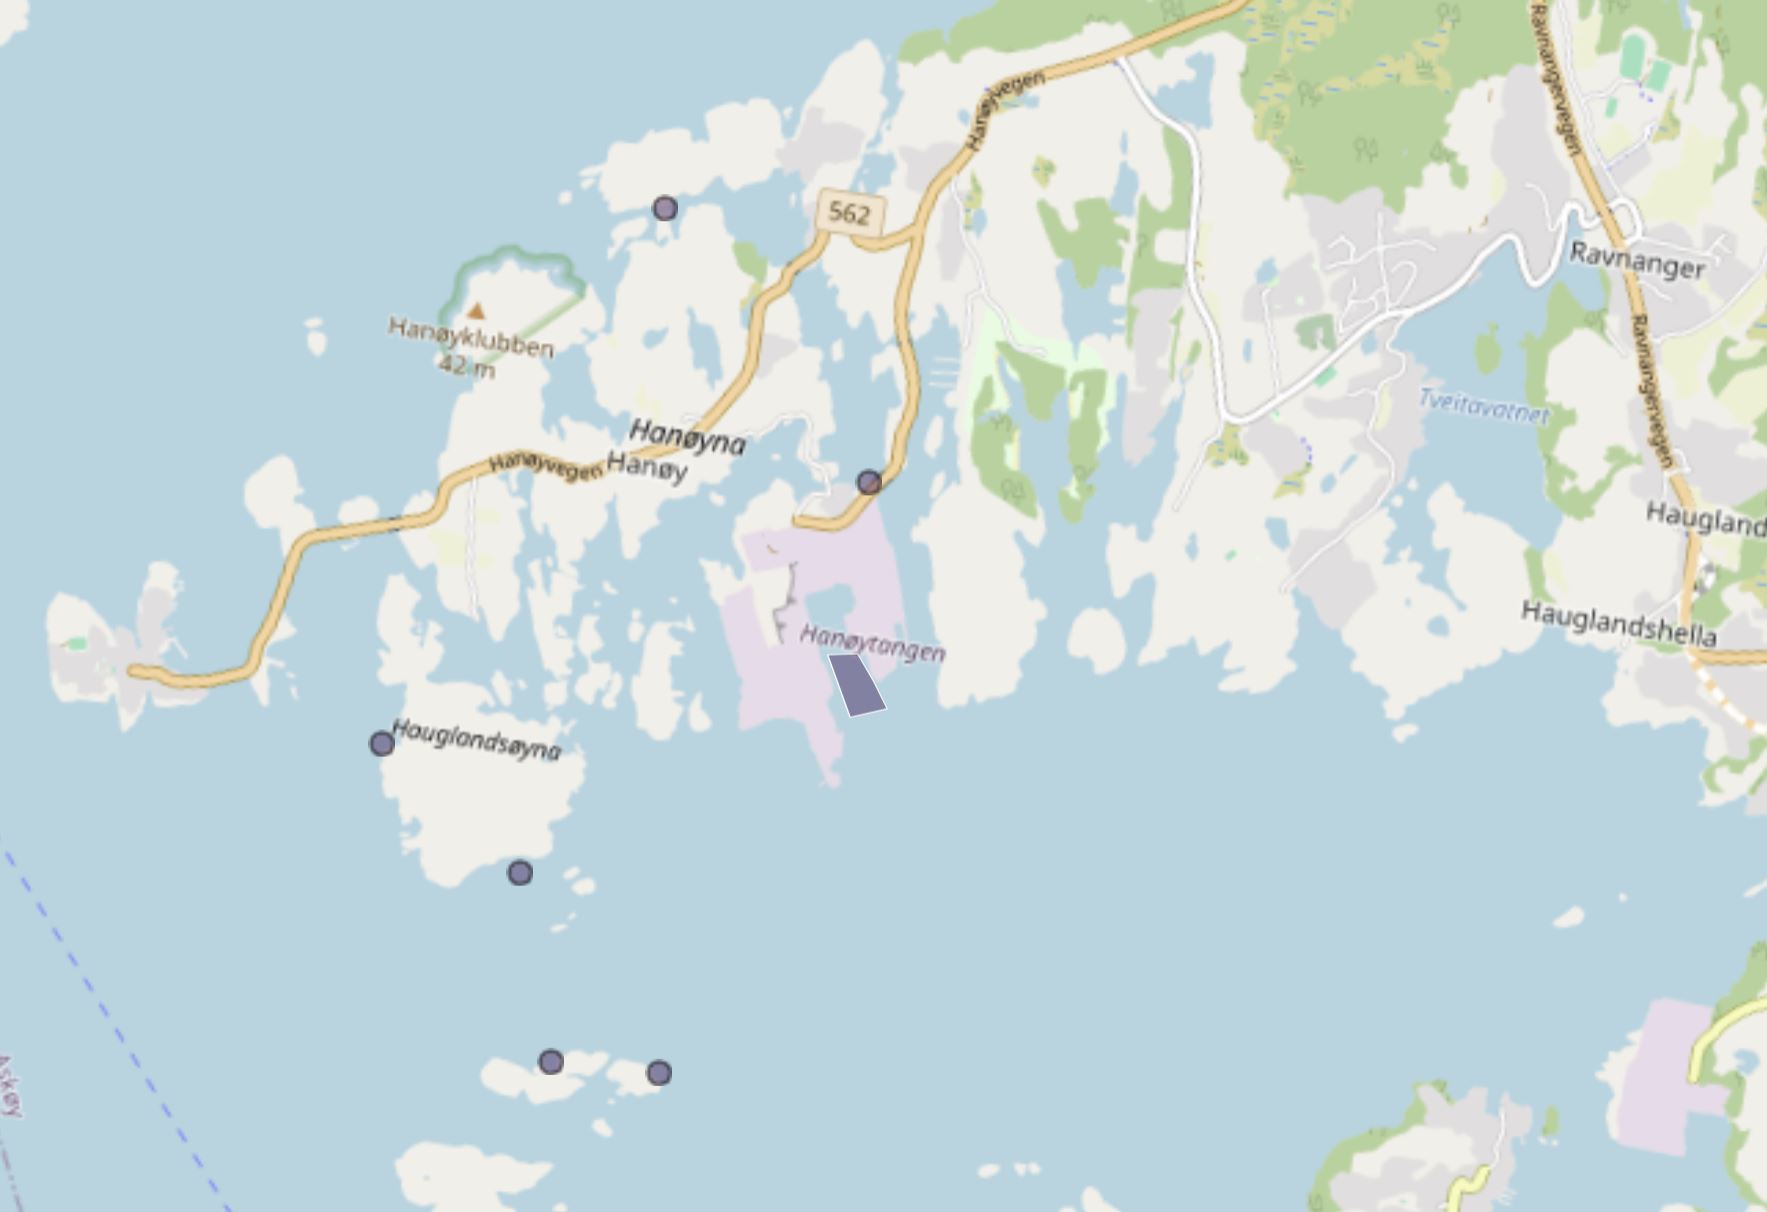 Kart over forekomst av havnespy ved Hanøy 